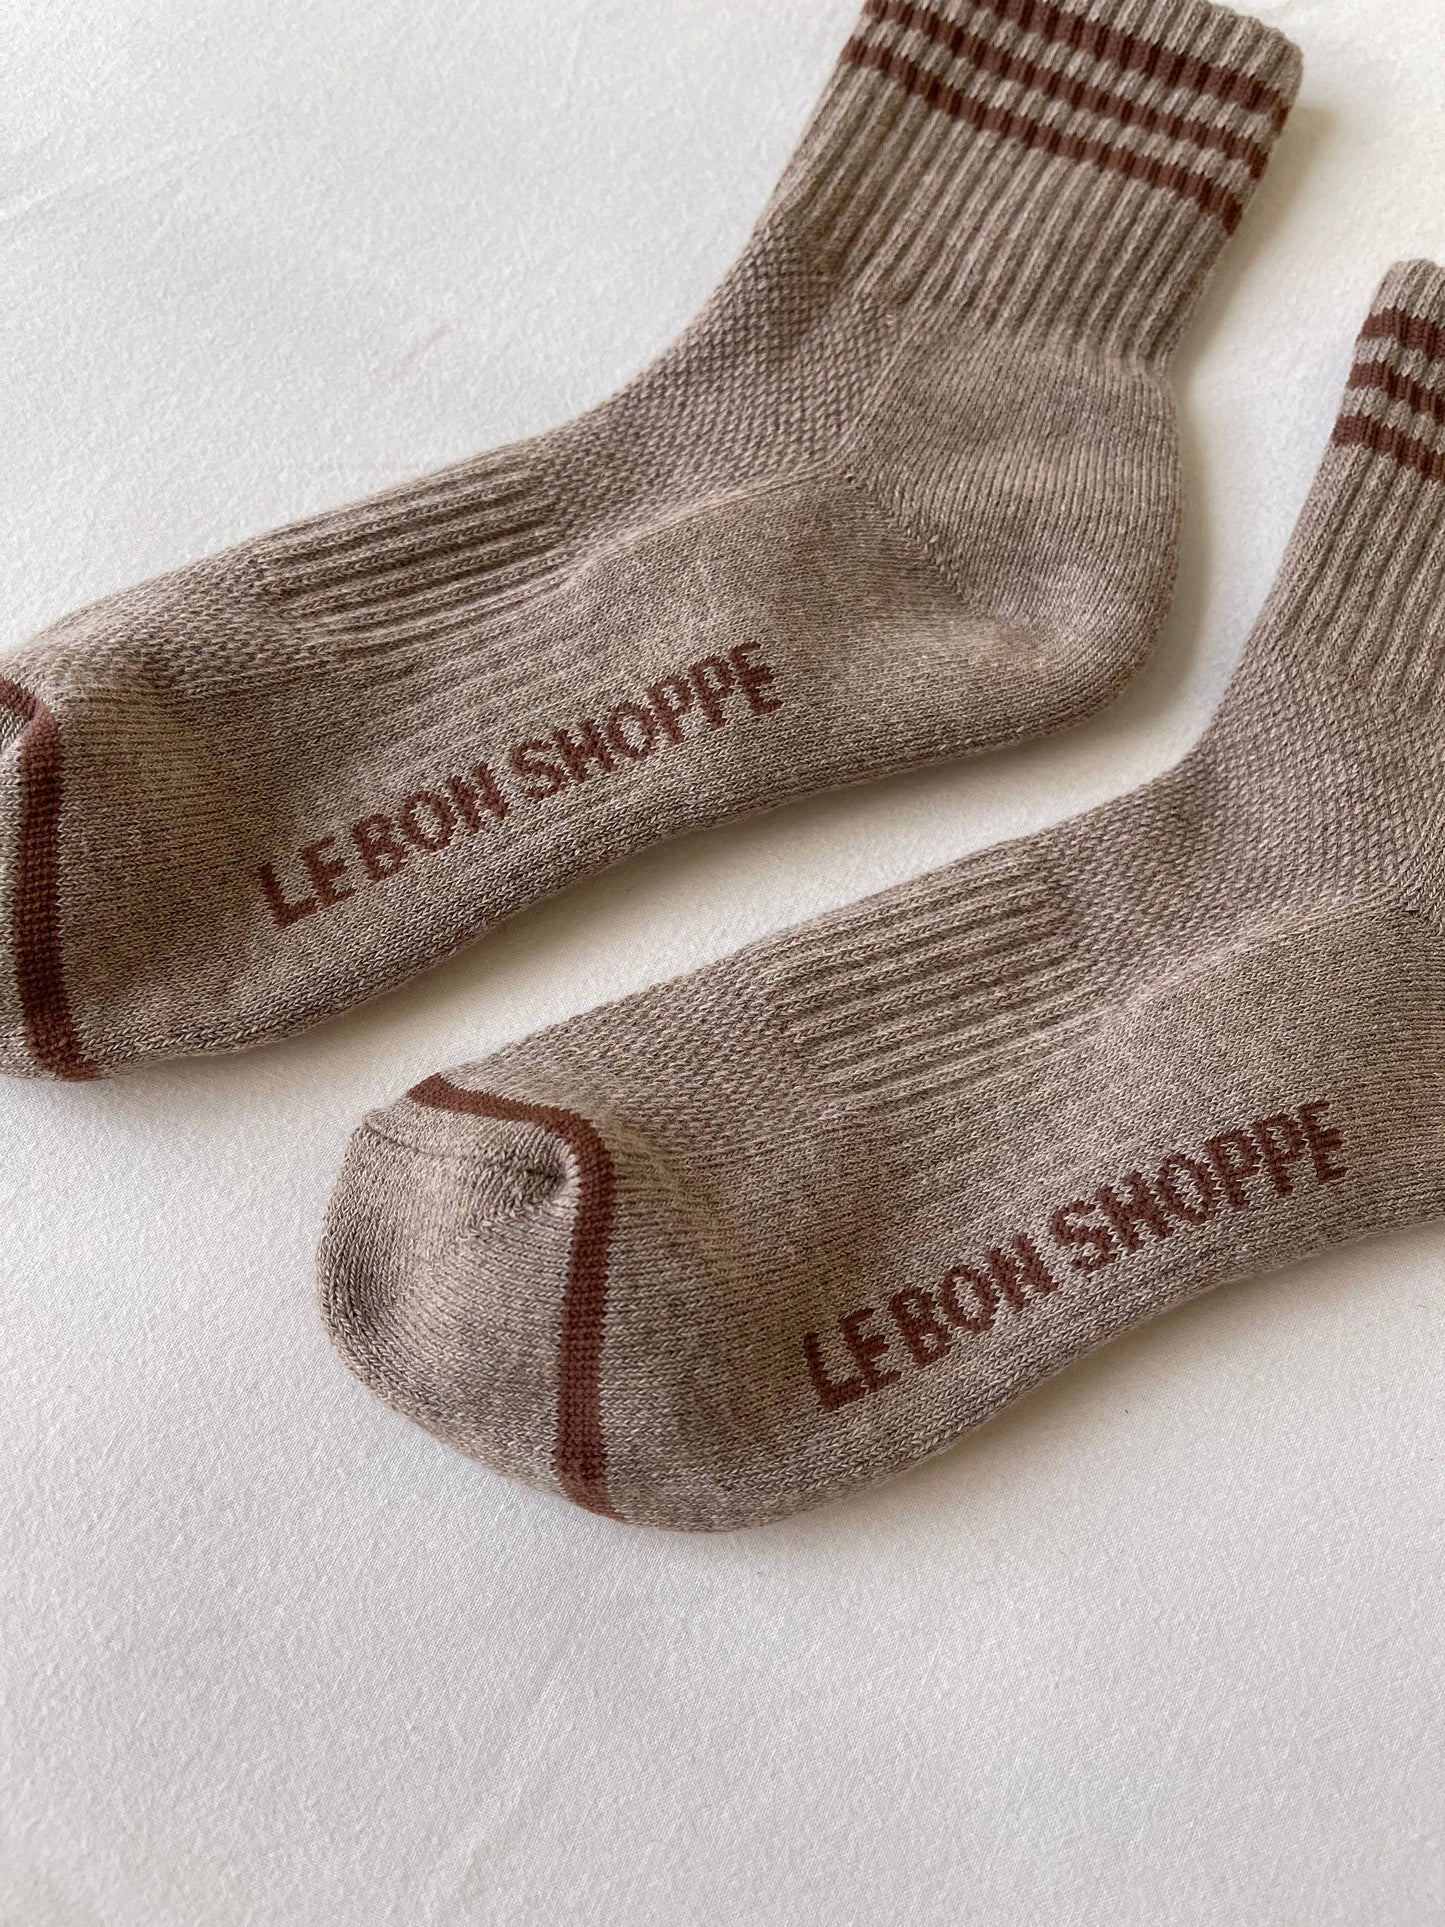 Le Bon Shoppe - Girlfriend Socks: Ivory